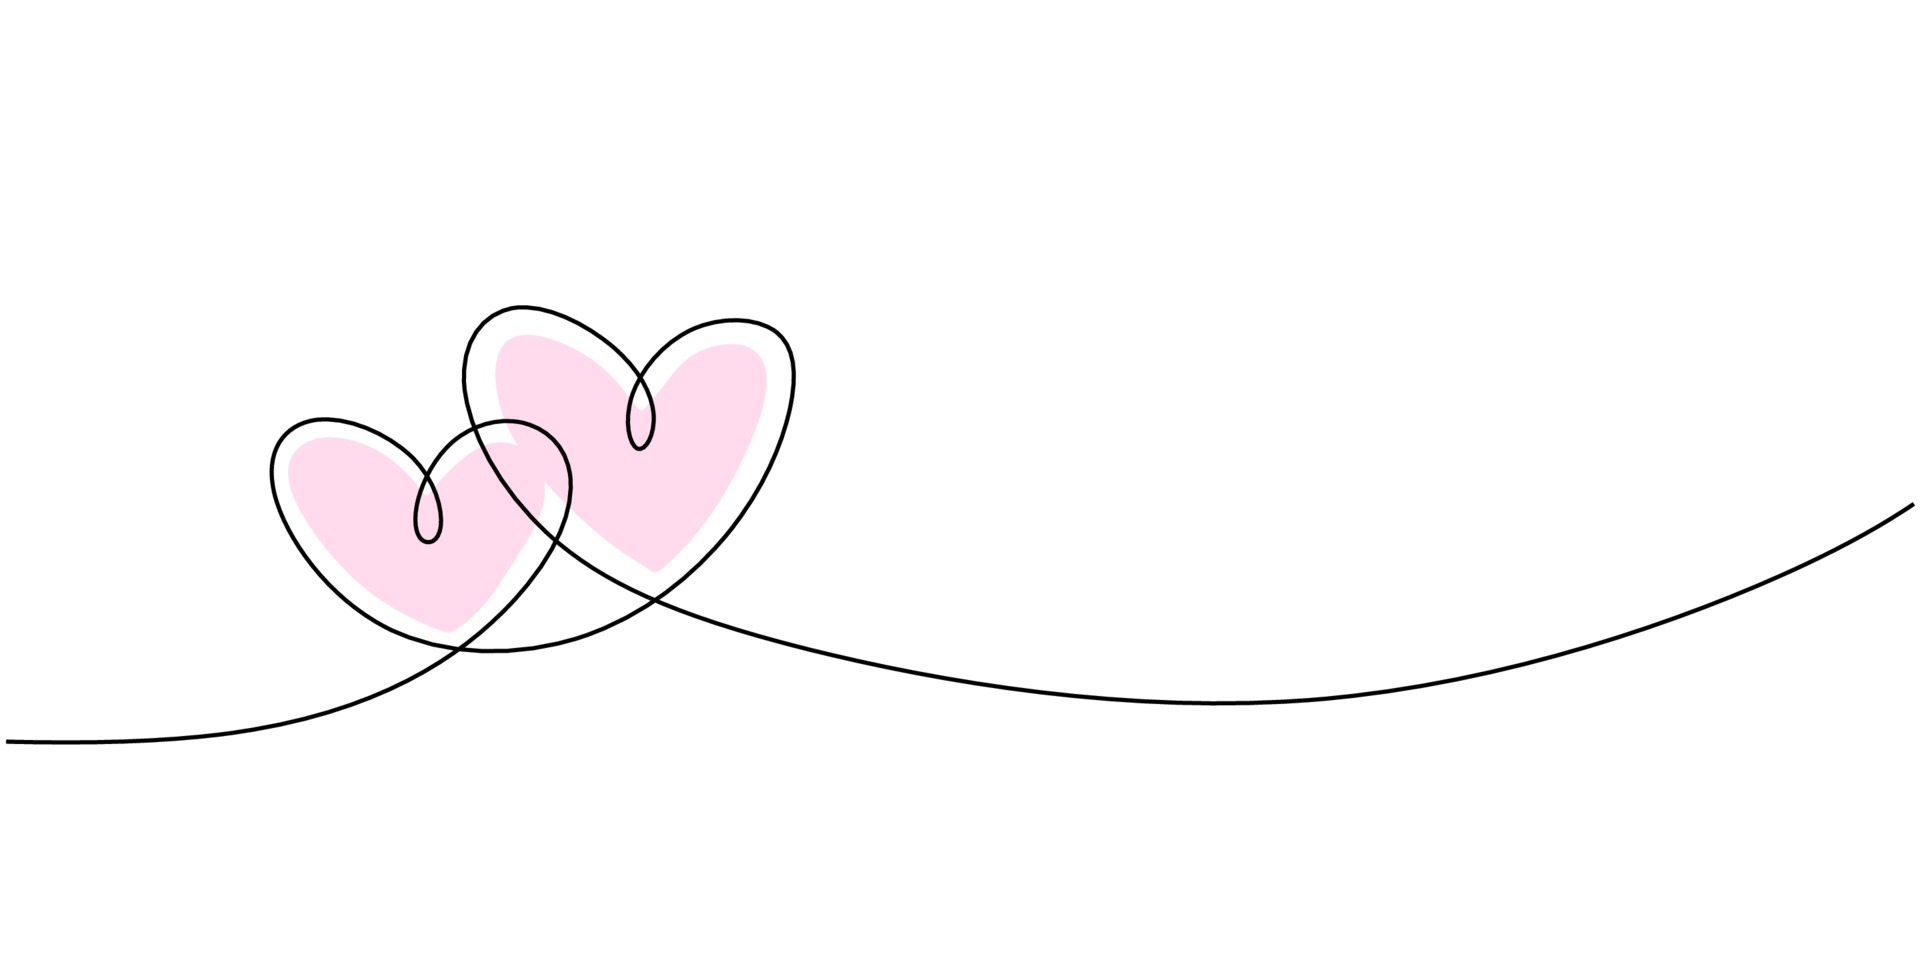 dibujo de l 237 nea continua del signo de amor con dos corazones rosados 